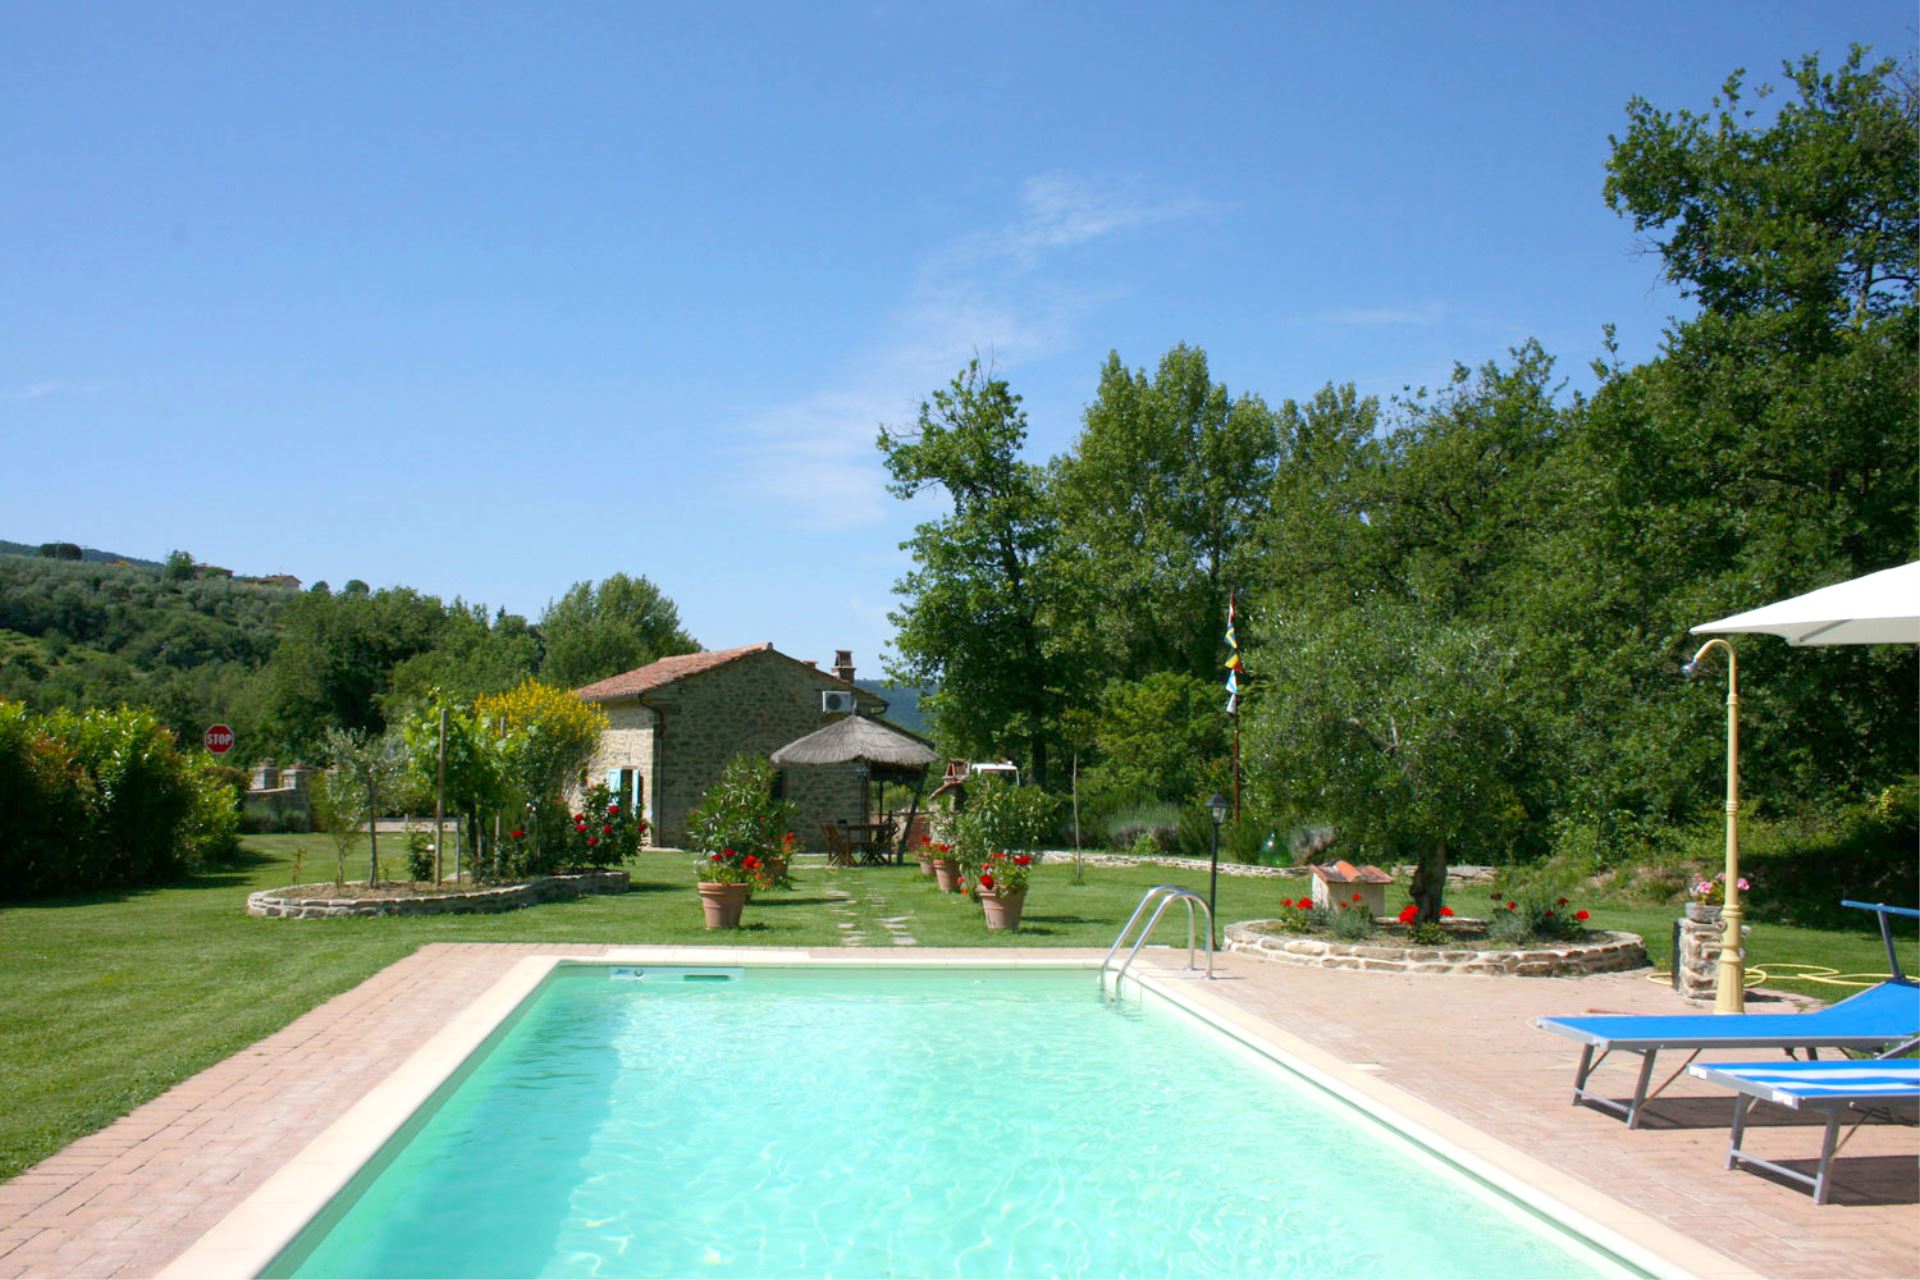 292_Casa Pino vakantiehuis met prive zwembad Toscane Arezzo1